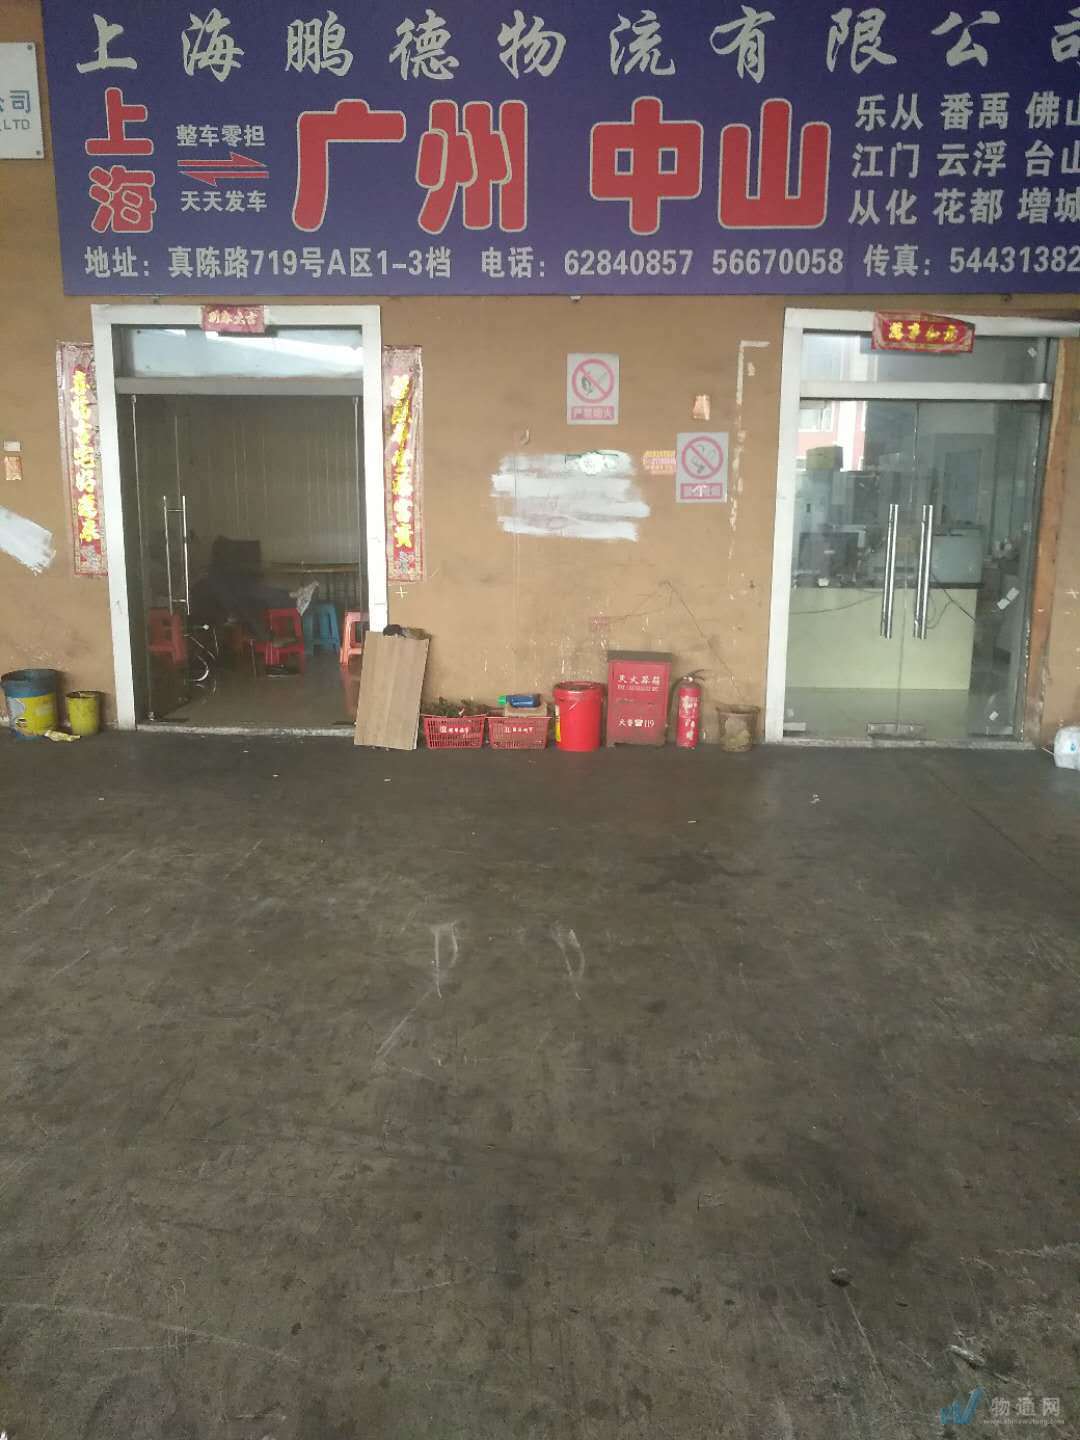 廣州鵬德物流有限公司上海辦事處